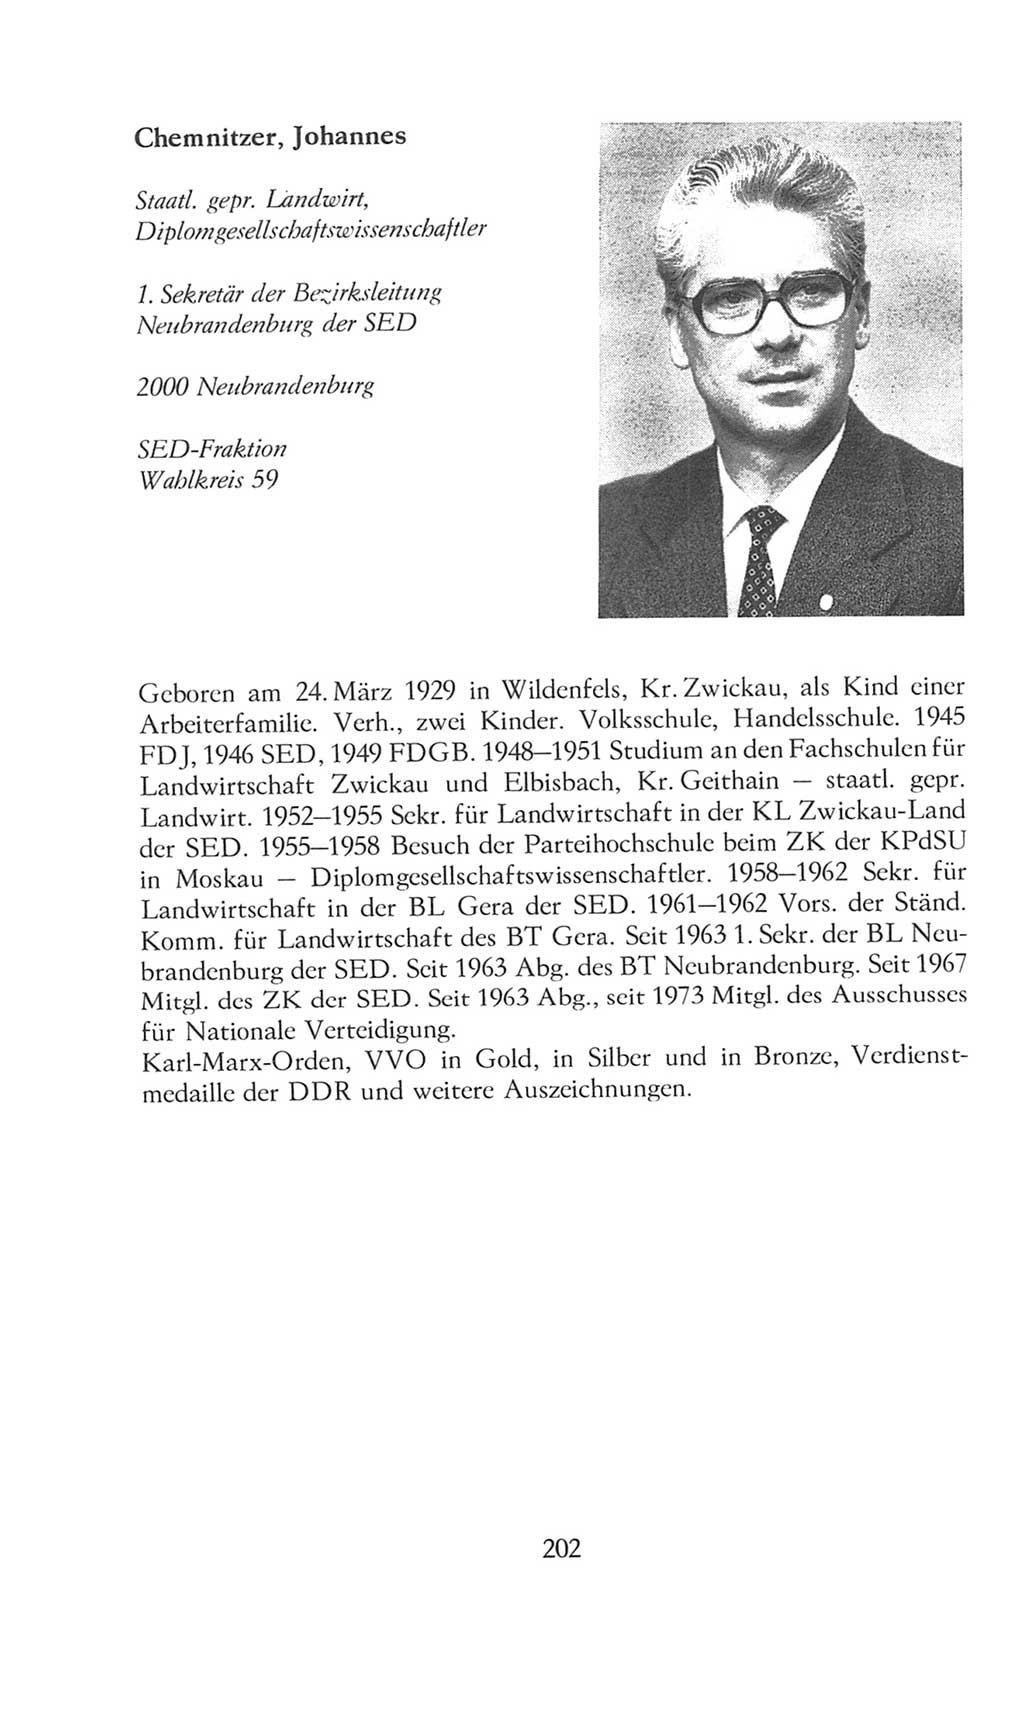 Volkskammer (VK) der Deutschen Demokratischen Republik (DDR), 8. Wahlperiode 1981-1986, Seite 202 (VK. DDR 8. WP. 1981-1986, S. 202)